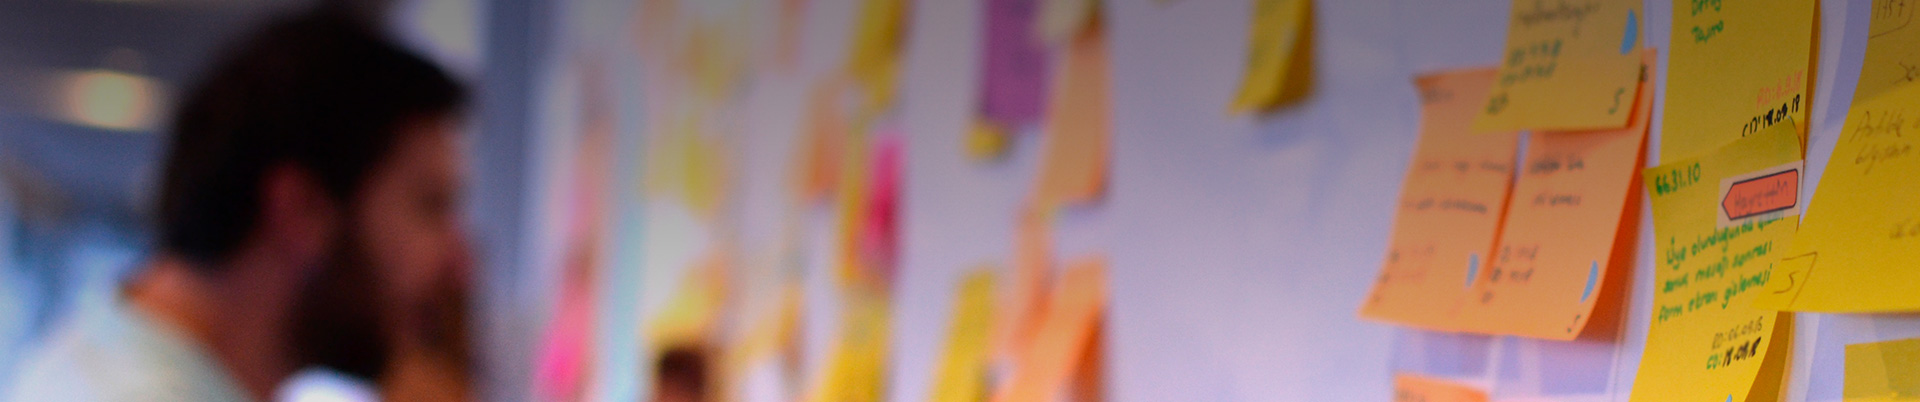 Un joven se encuentra frente a una pared repleta de papeles de colores con anotaciones